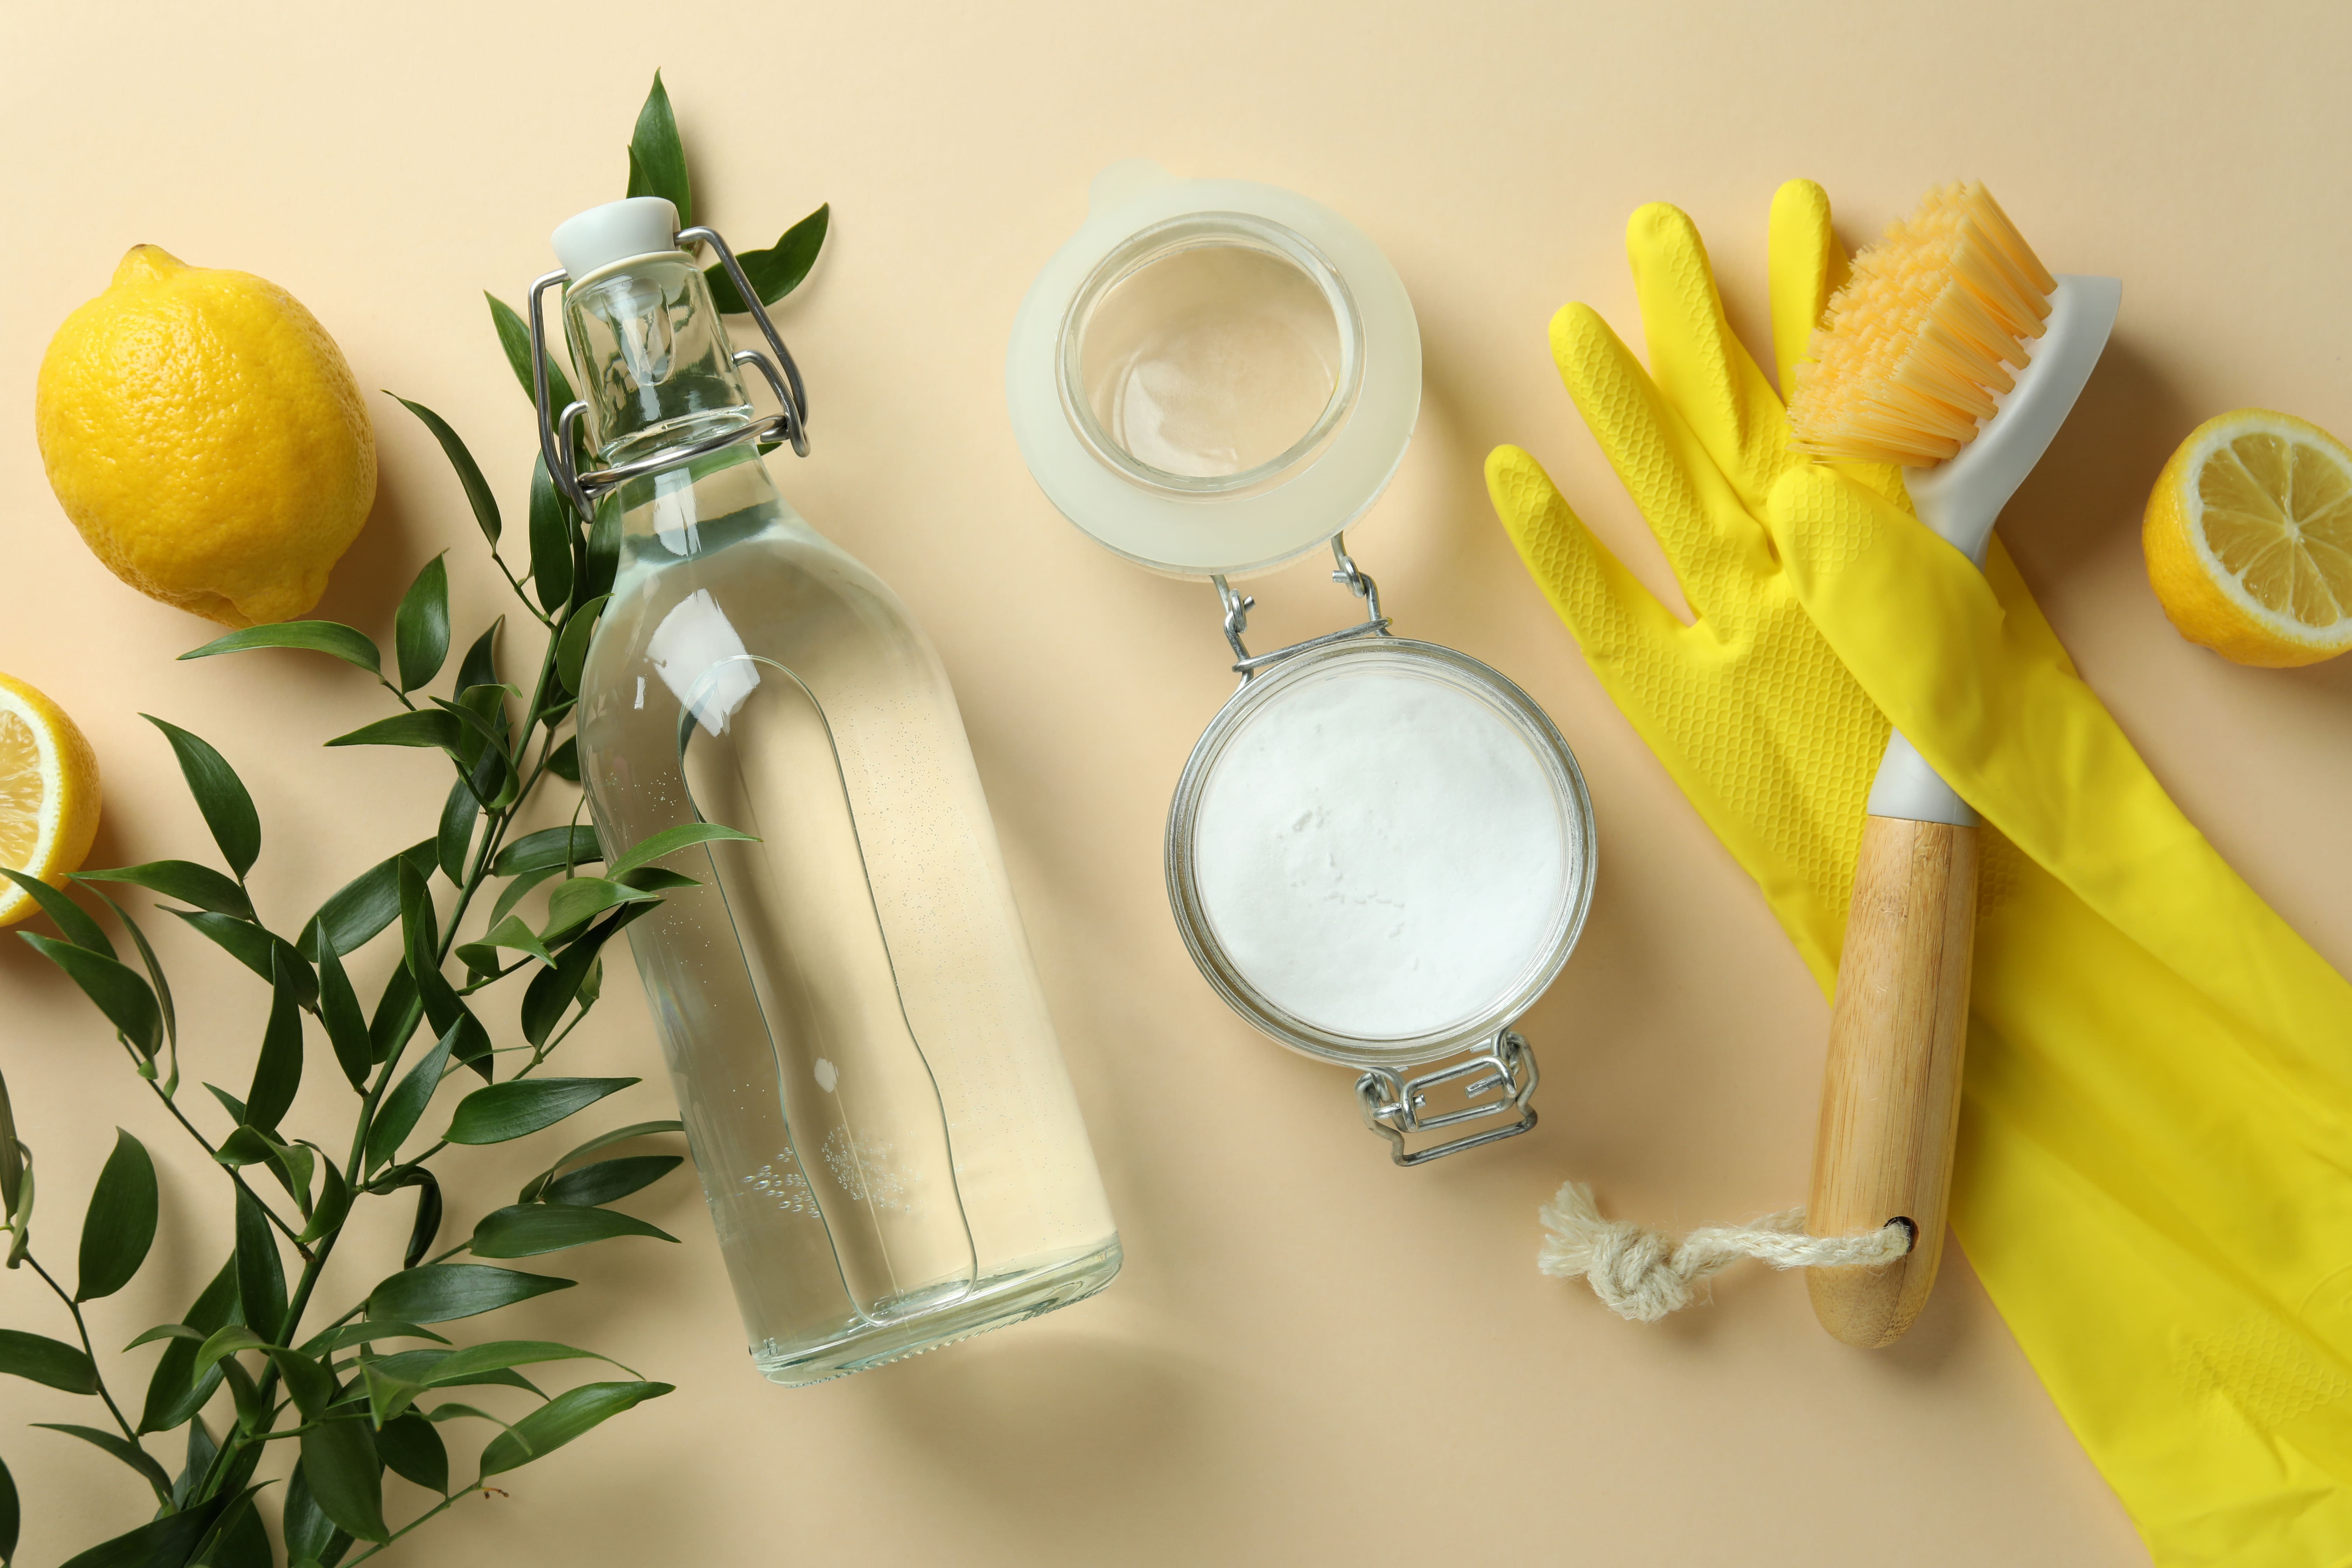 Evde Doğal Temizlik: Zeytinyağı ile Etkili ve Güvenli Temizlik Yöntemleri